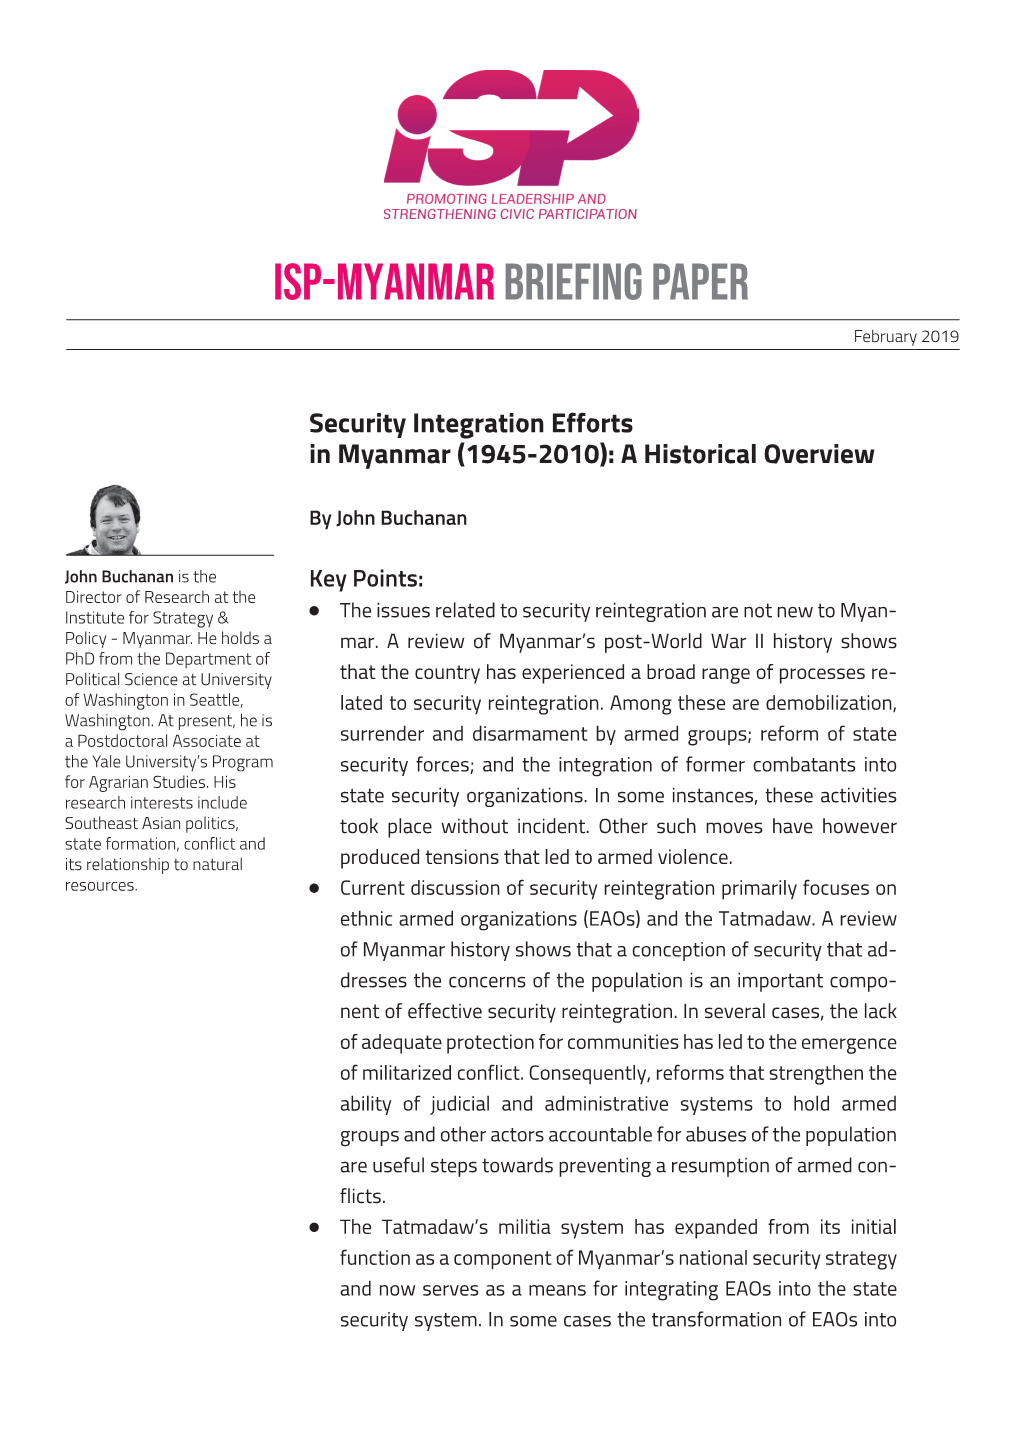 ISP-Myanmar Briefing Paper